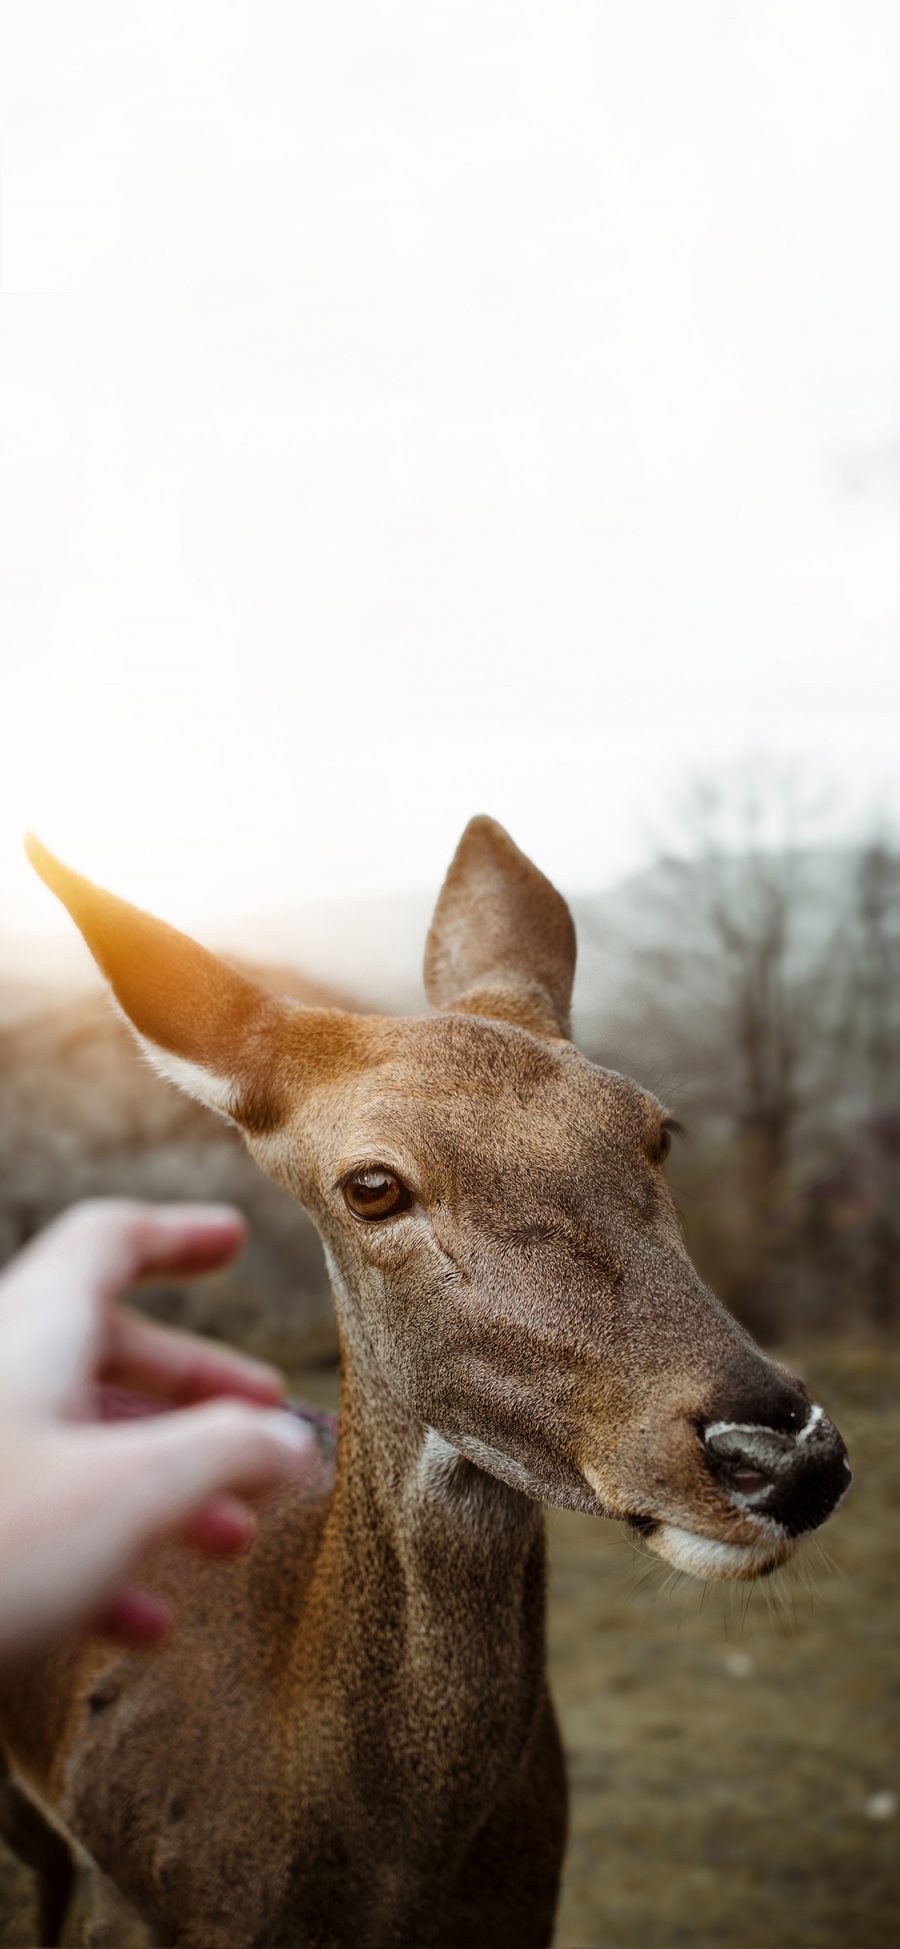 [2436×1125]保护动物 小鹿 可爱 触摸 苹果手机壁纸图片